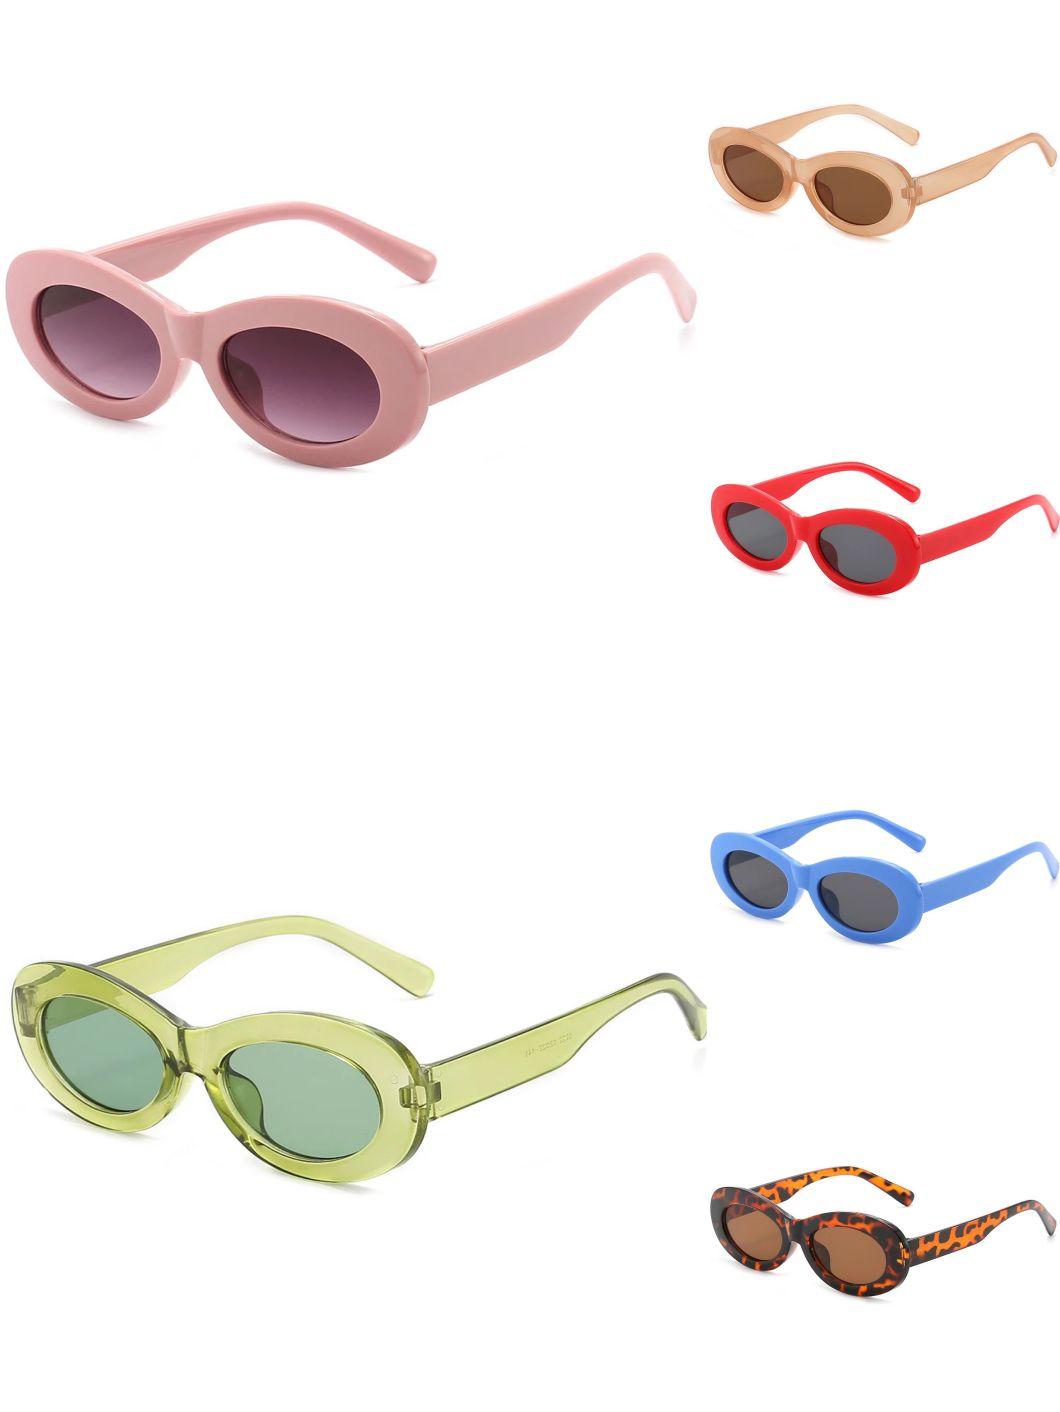 Designed Simple Fashion Style Polarized Sunglasses Unisex